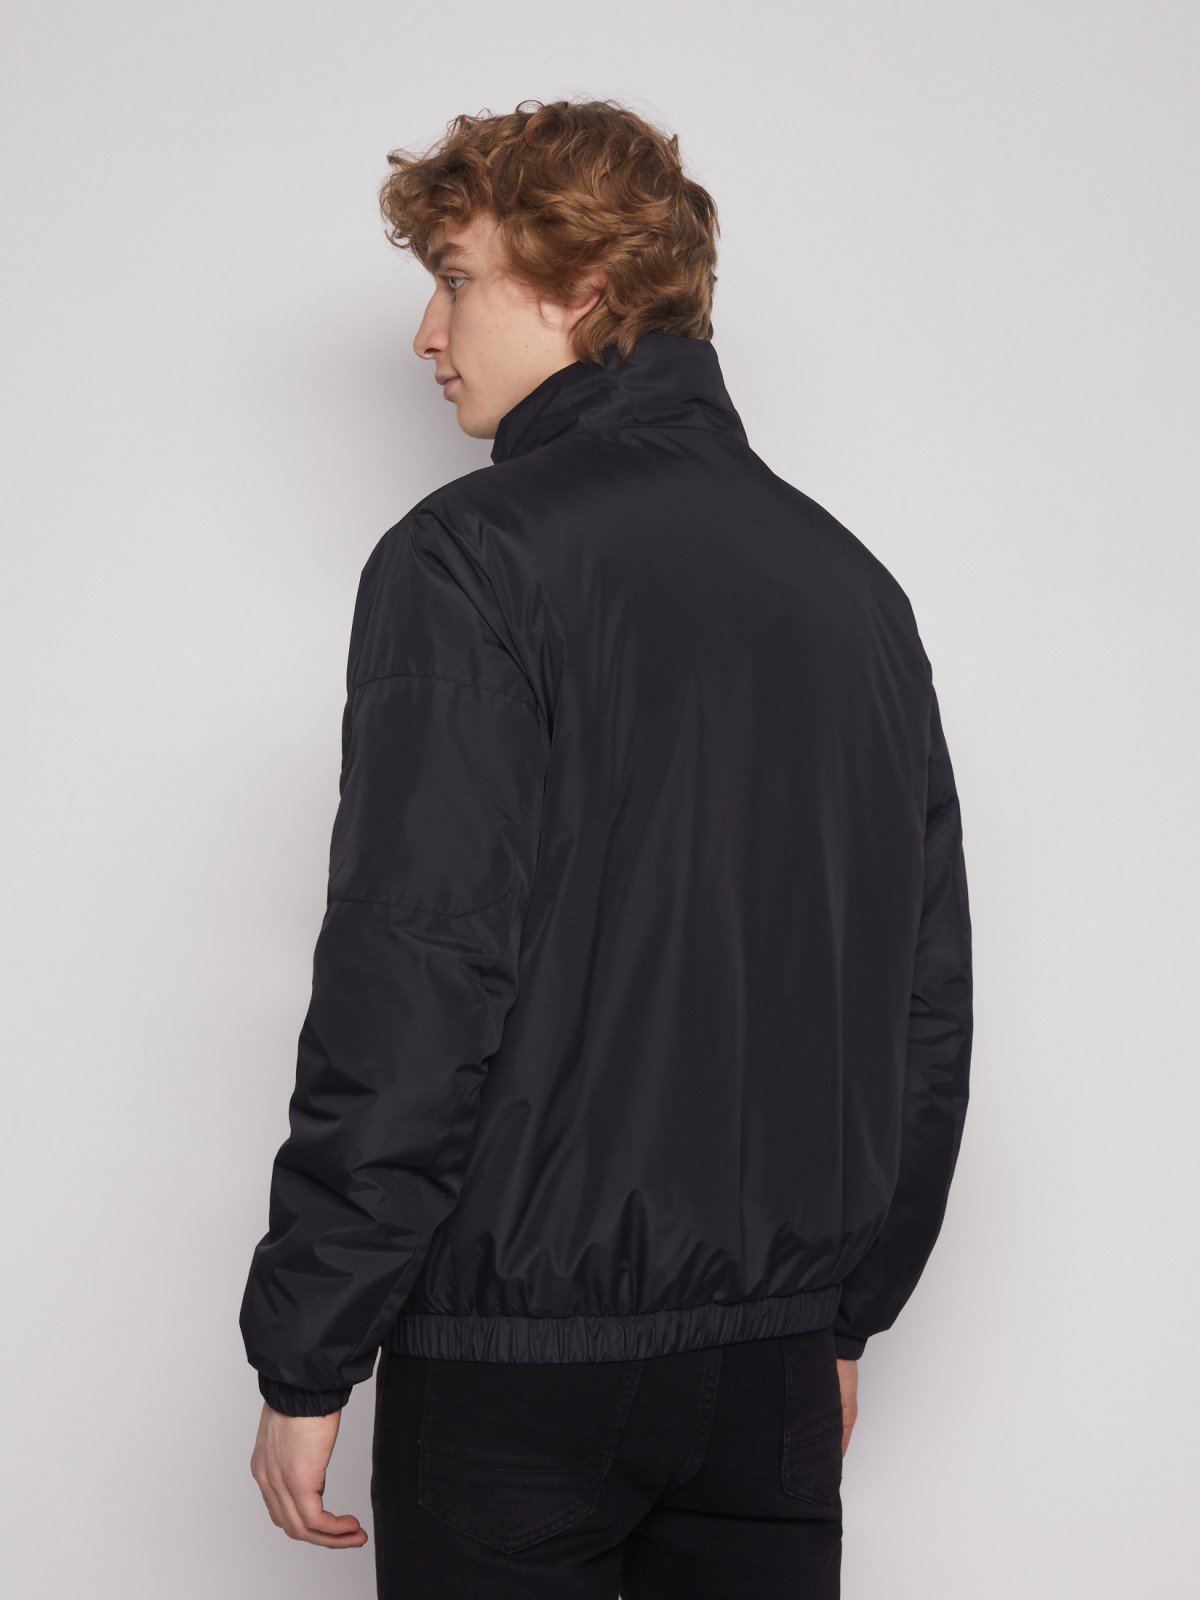 Куртка zolla 013135102074, цвет черный, размер S - фото 4